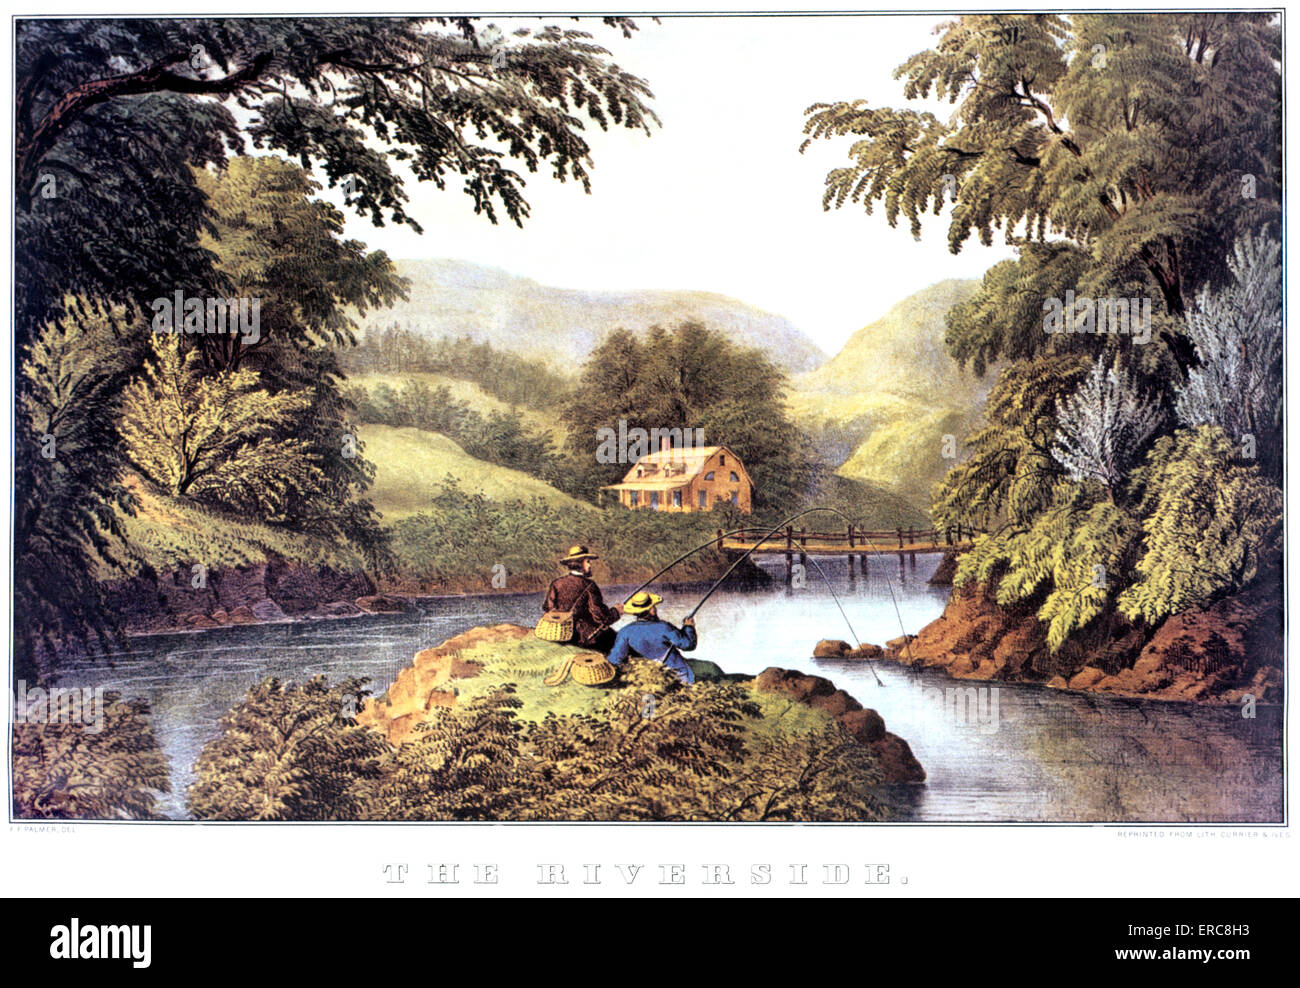 Années 1870, le Riverside - Peinture par F F PALMER - CURRIER & IVES LITHOGRAPHIE - 1870 Banque D'Images